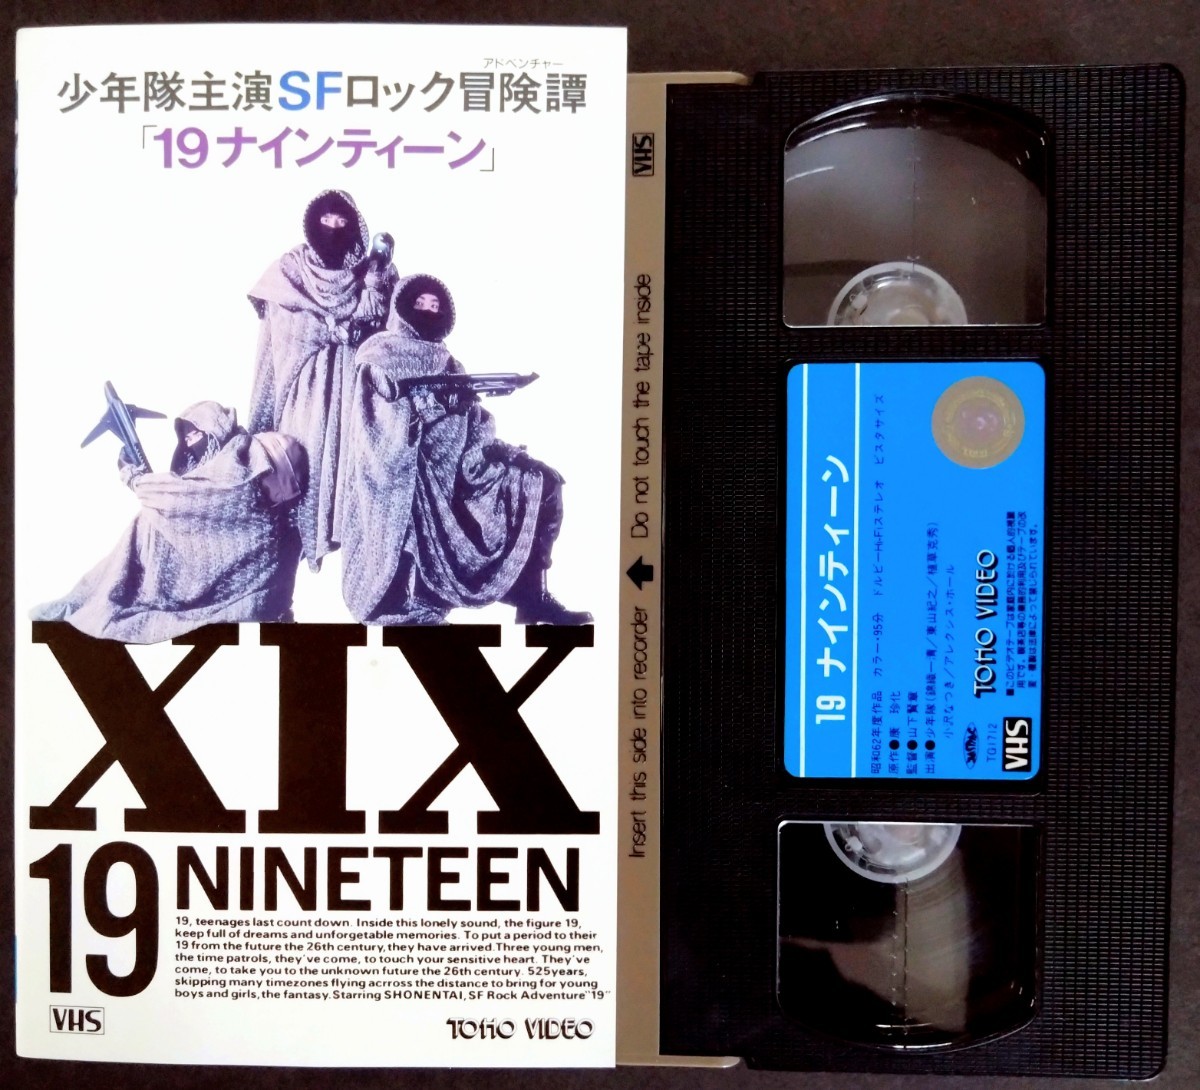 少年隊 19 ナインティーン VHS ビデオ 映画-